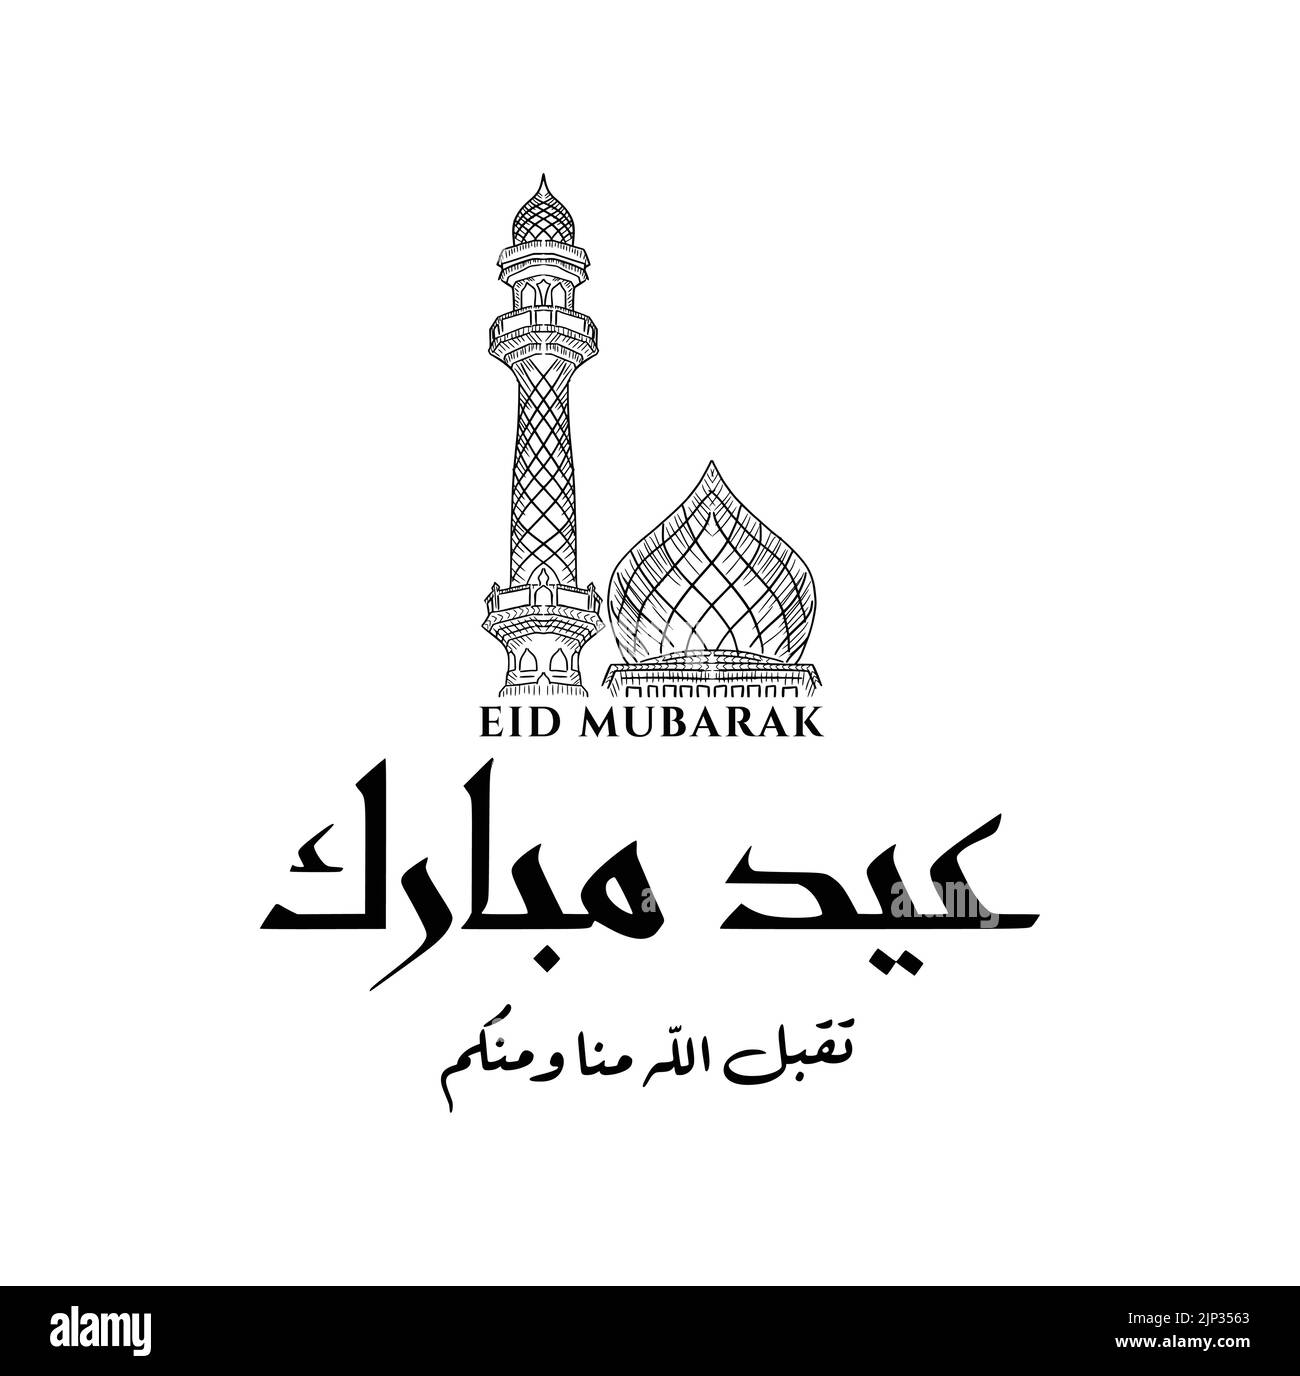 Un disegno di illustrazione della moschea araba per la celebrazione di Eid Mubarak con testo arabo Illustrazione Vettoriale